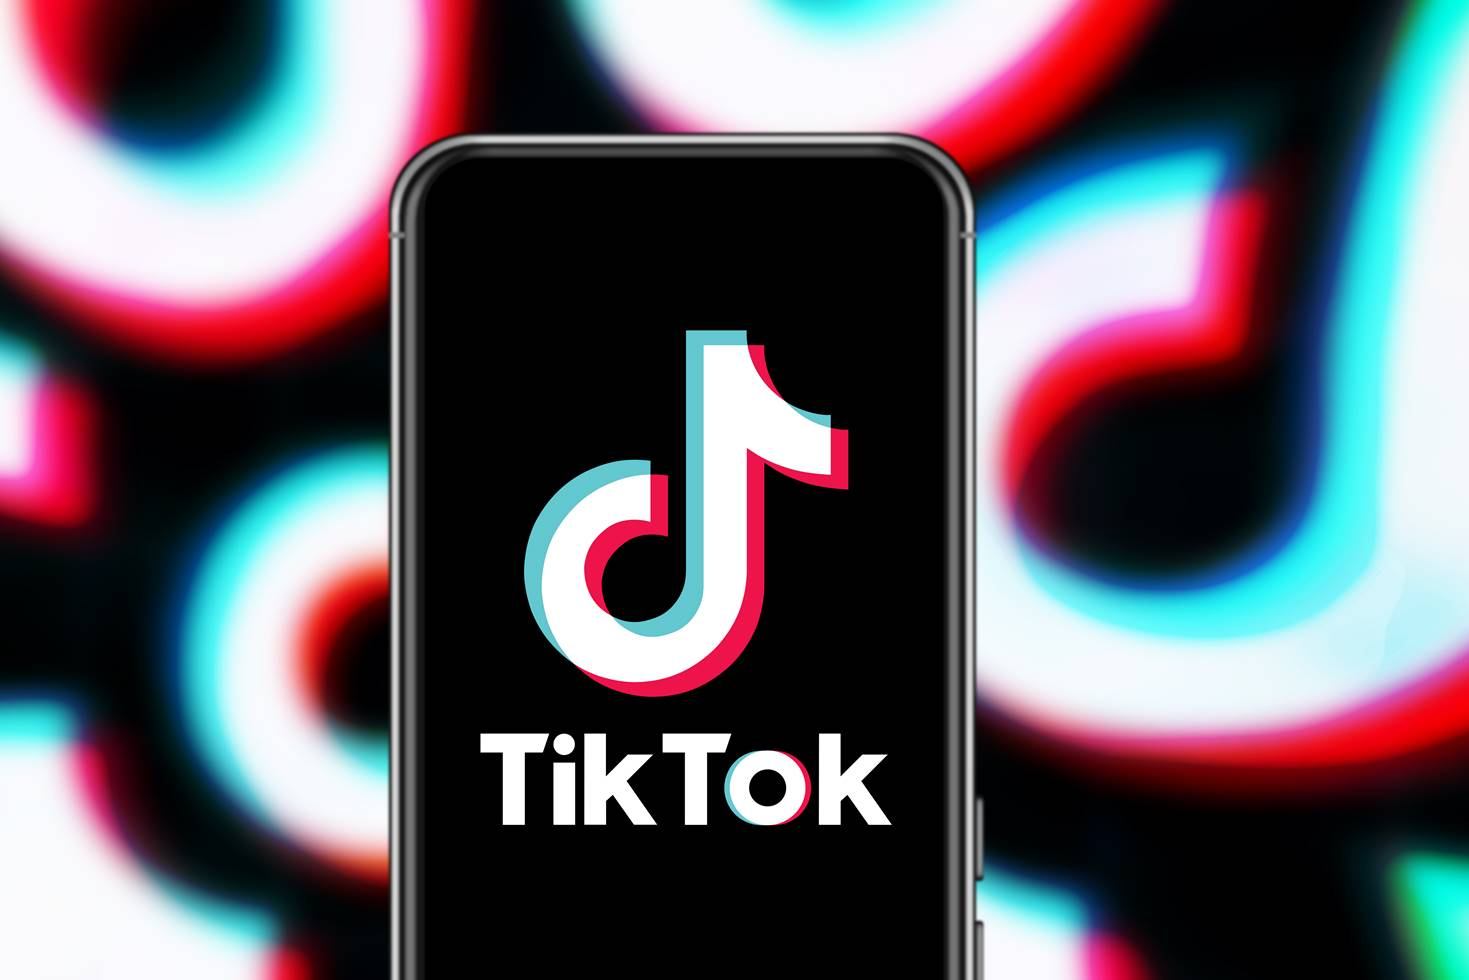 字节跳动今年已花费超七百万美元用于阻止TikTok禁止法案